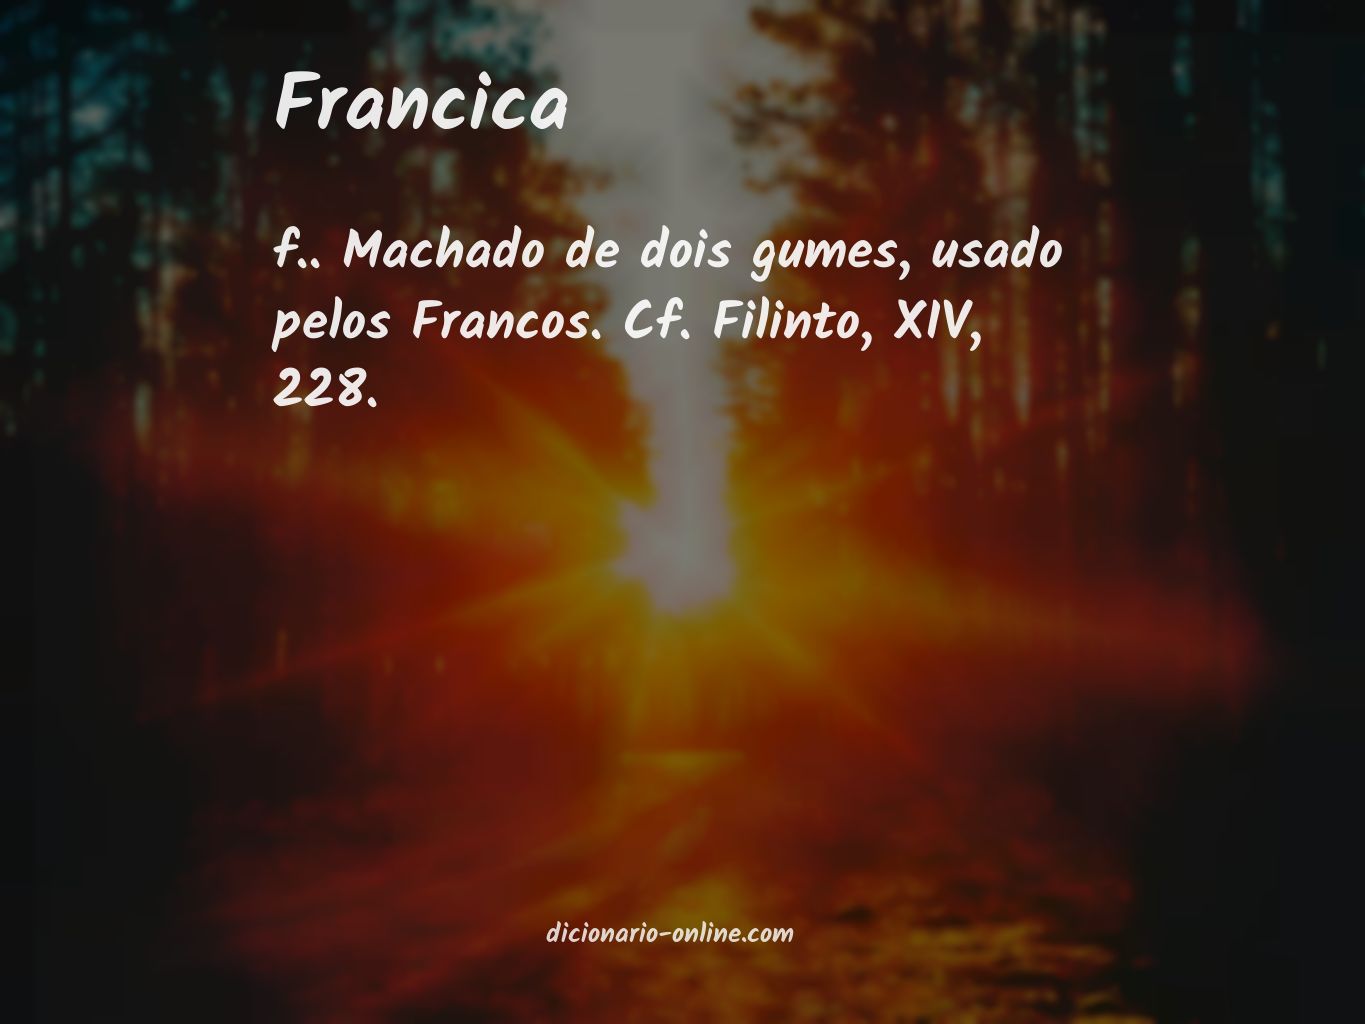 Significado de francica